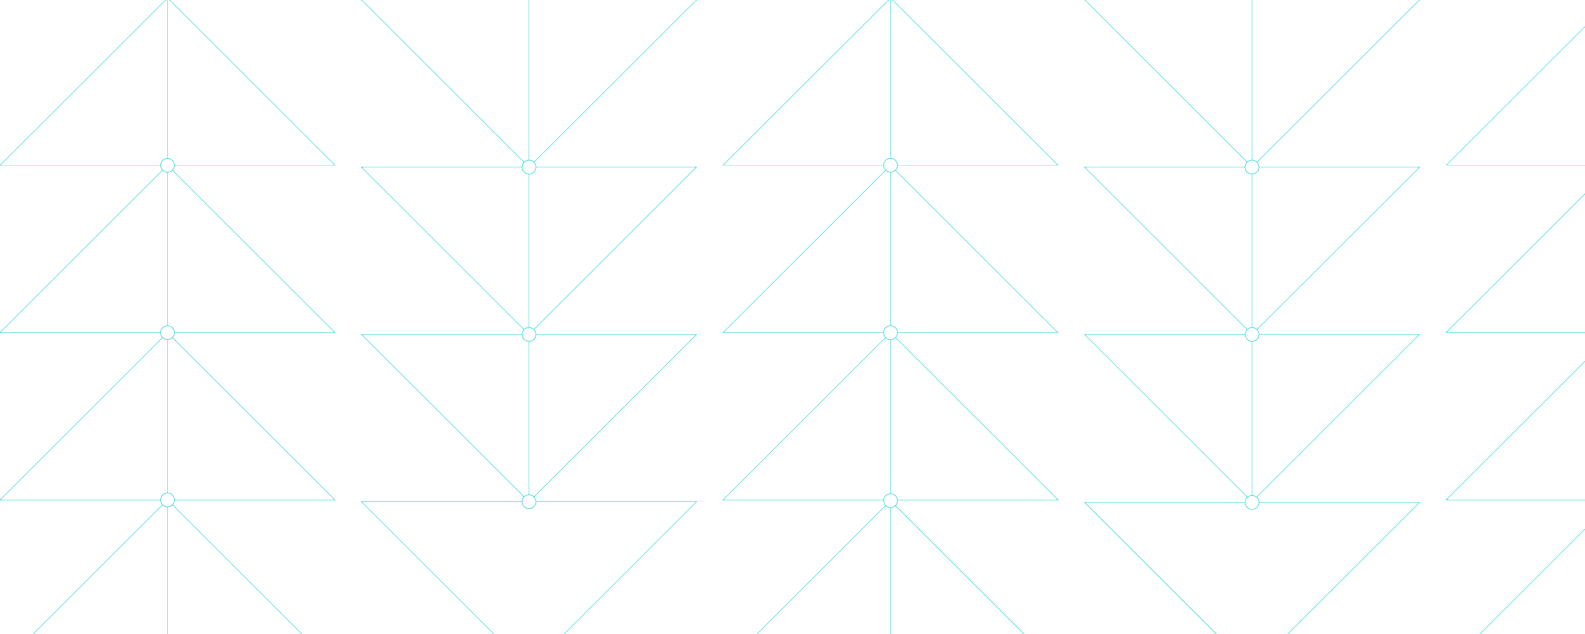 Abbildung mit dünnen blauen Linien, die filigrane dreieckige Muster bilden